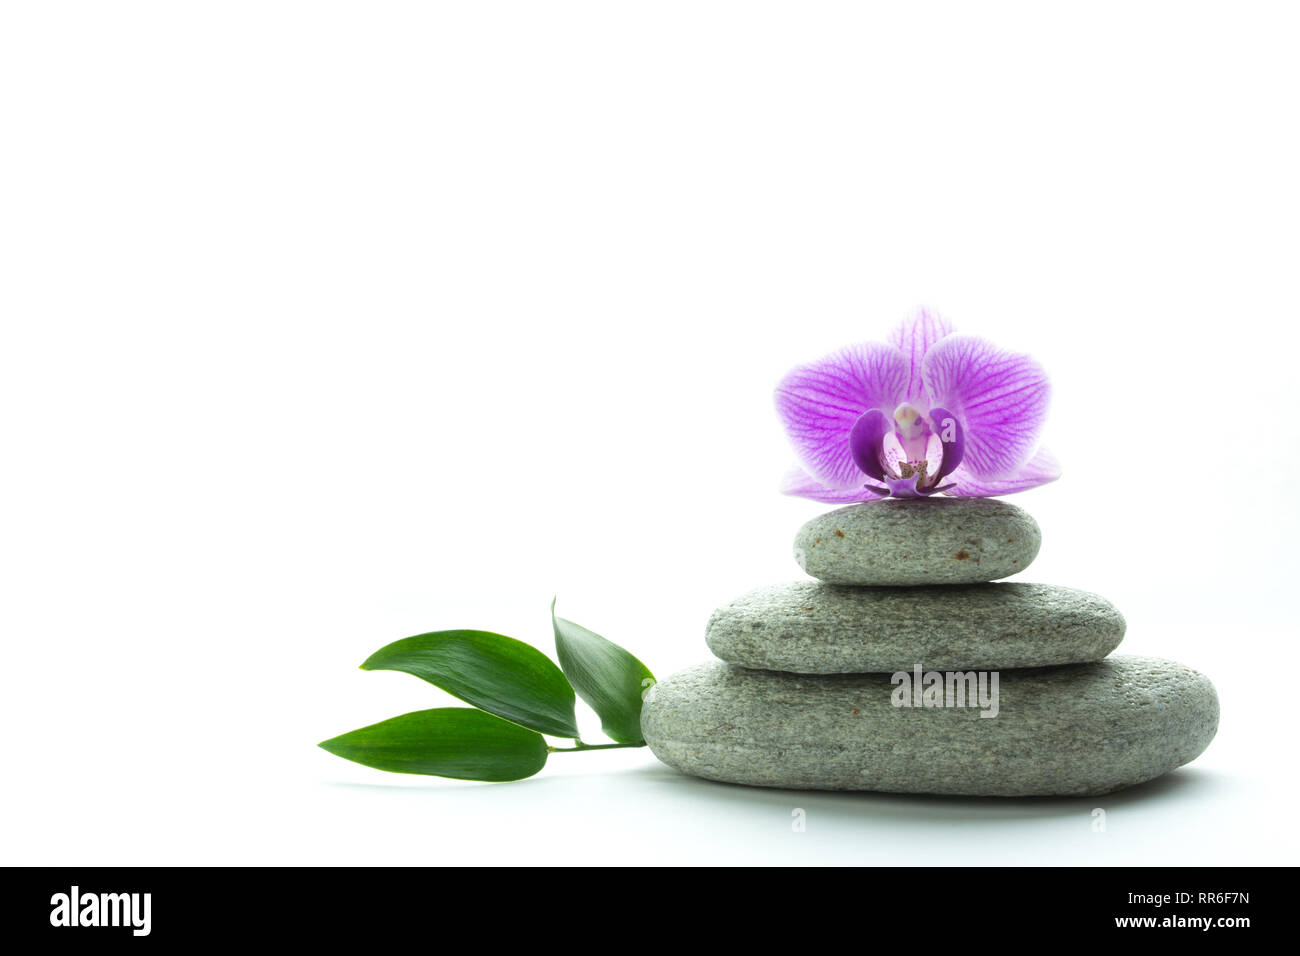 Konzept von Wellness und Ruhe - purple orchid Blossom auf drei grauen roundstones und grüne Blätter auf weißem Hintergrund Stockfoto